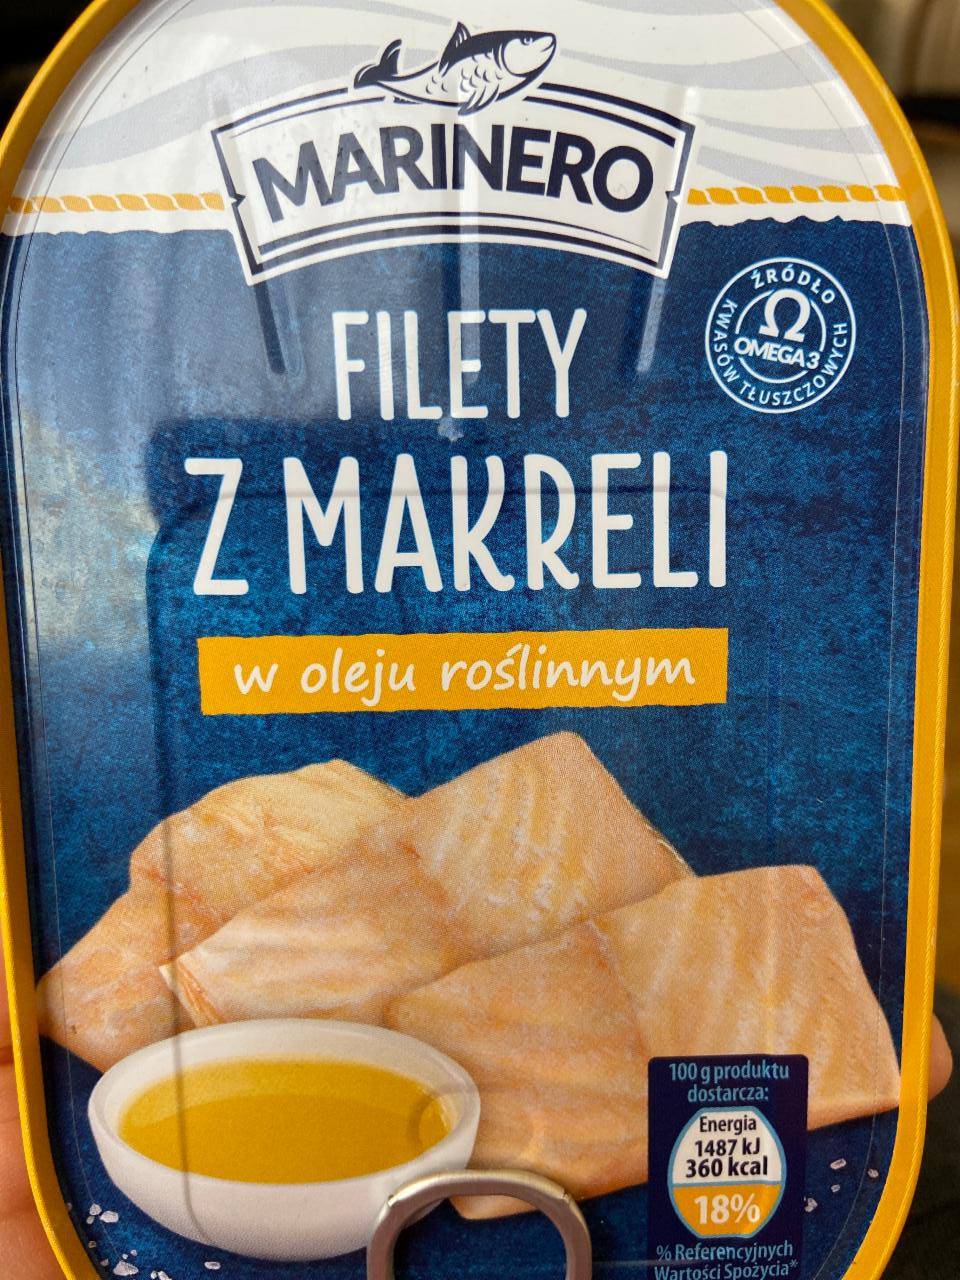 Fotografie - Filety z makreli w oleju roślinnym Marinero